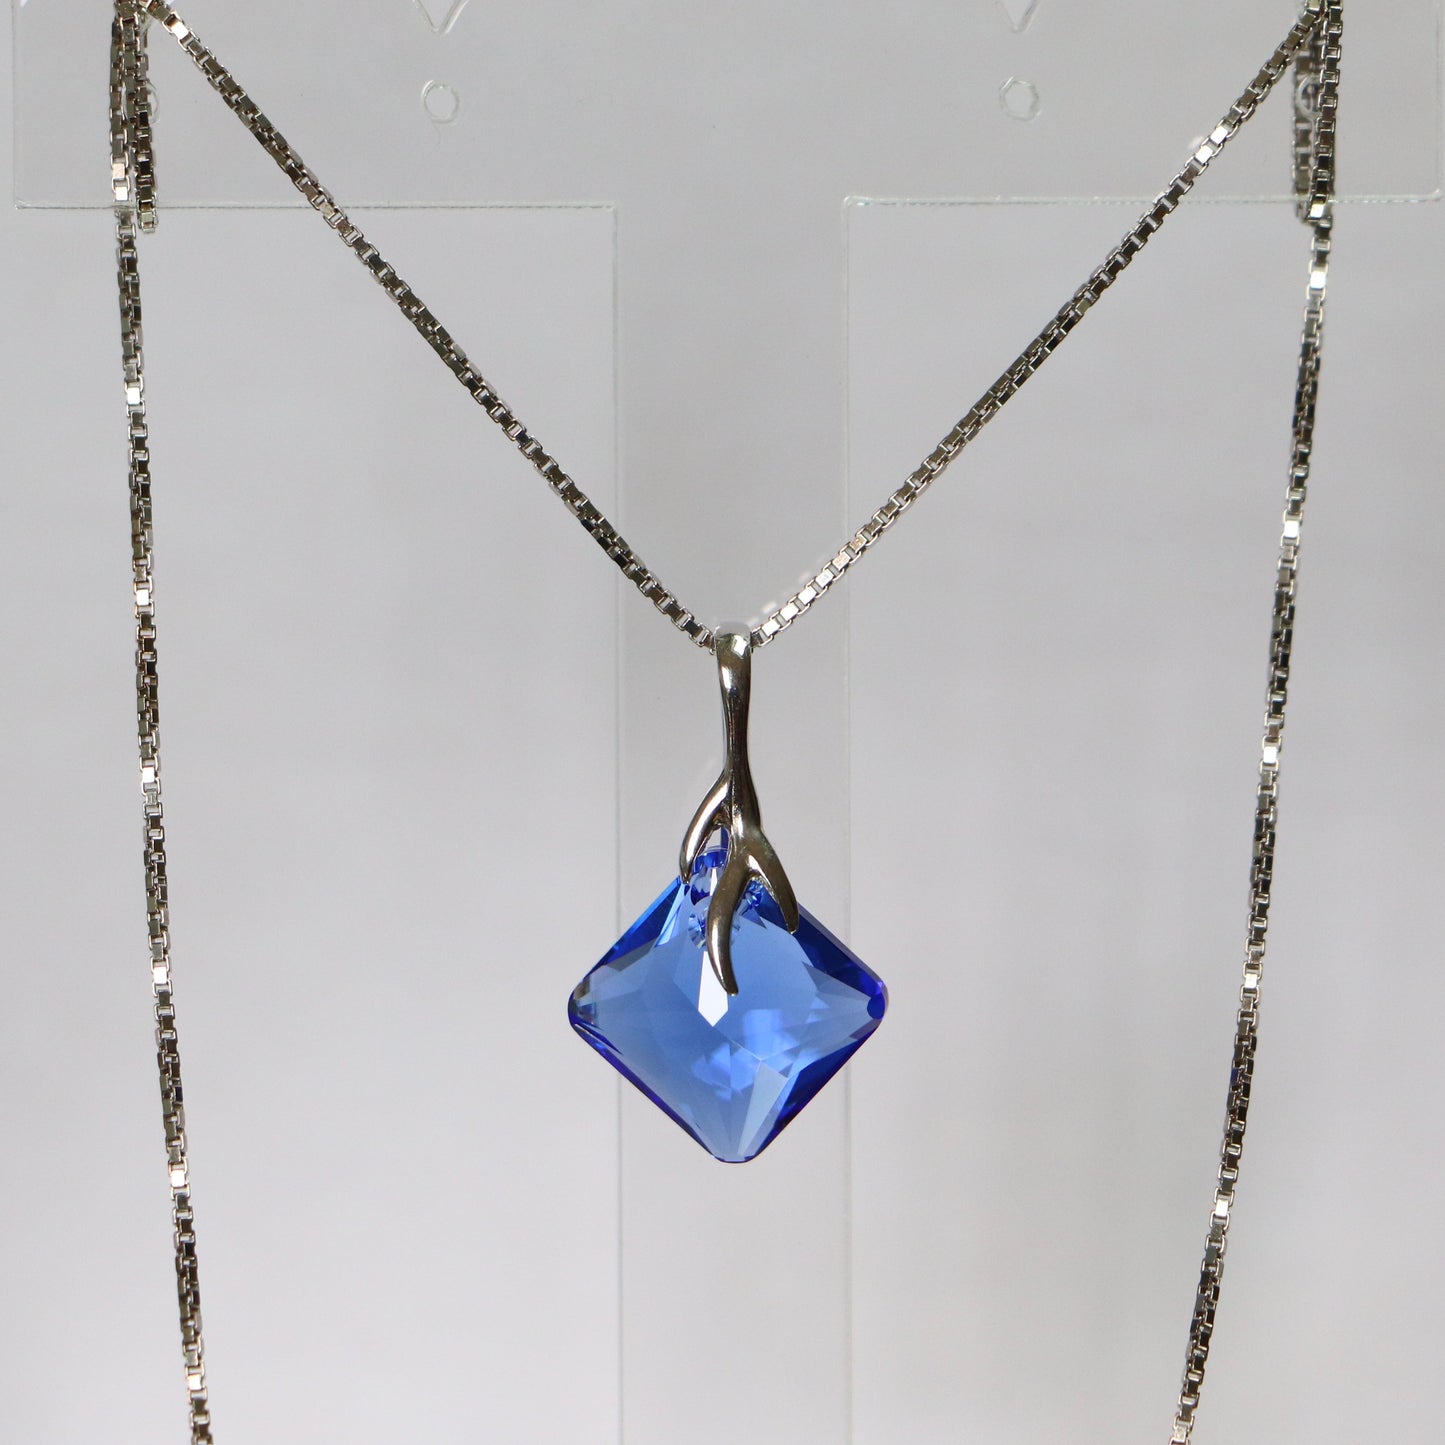 Pendentif, cristaux Swarovski, argent rhodié, bleu, AGATHE